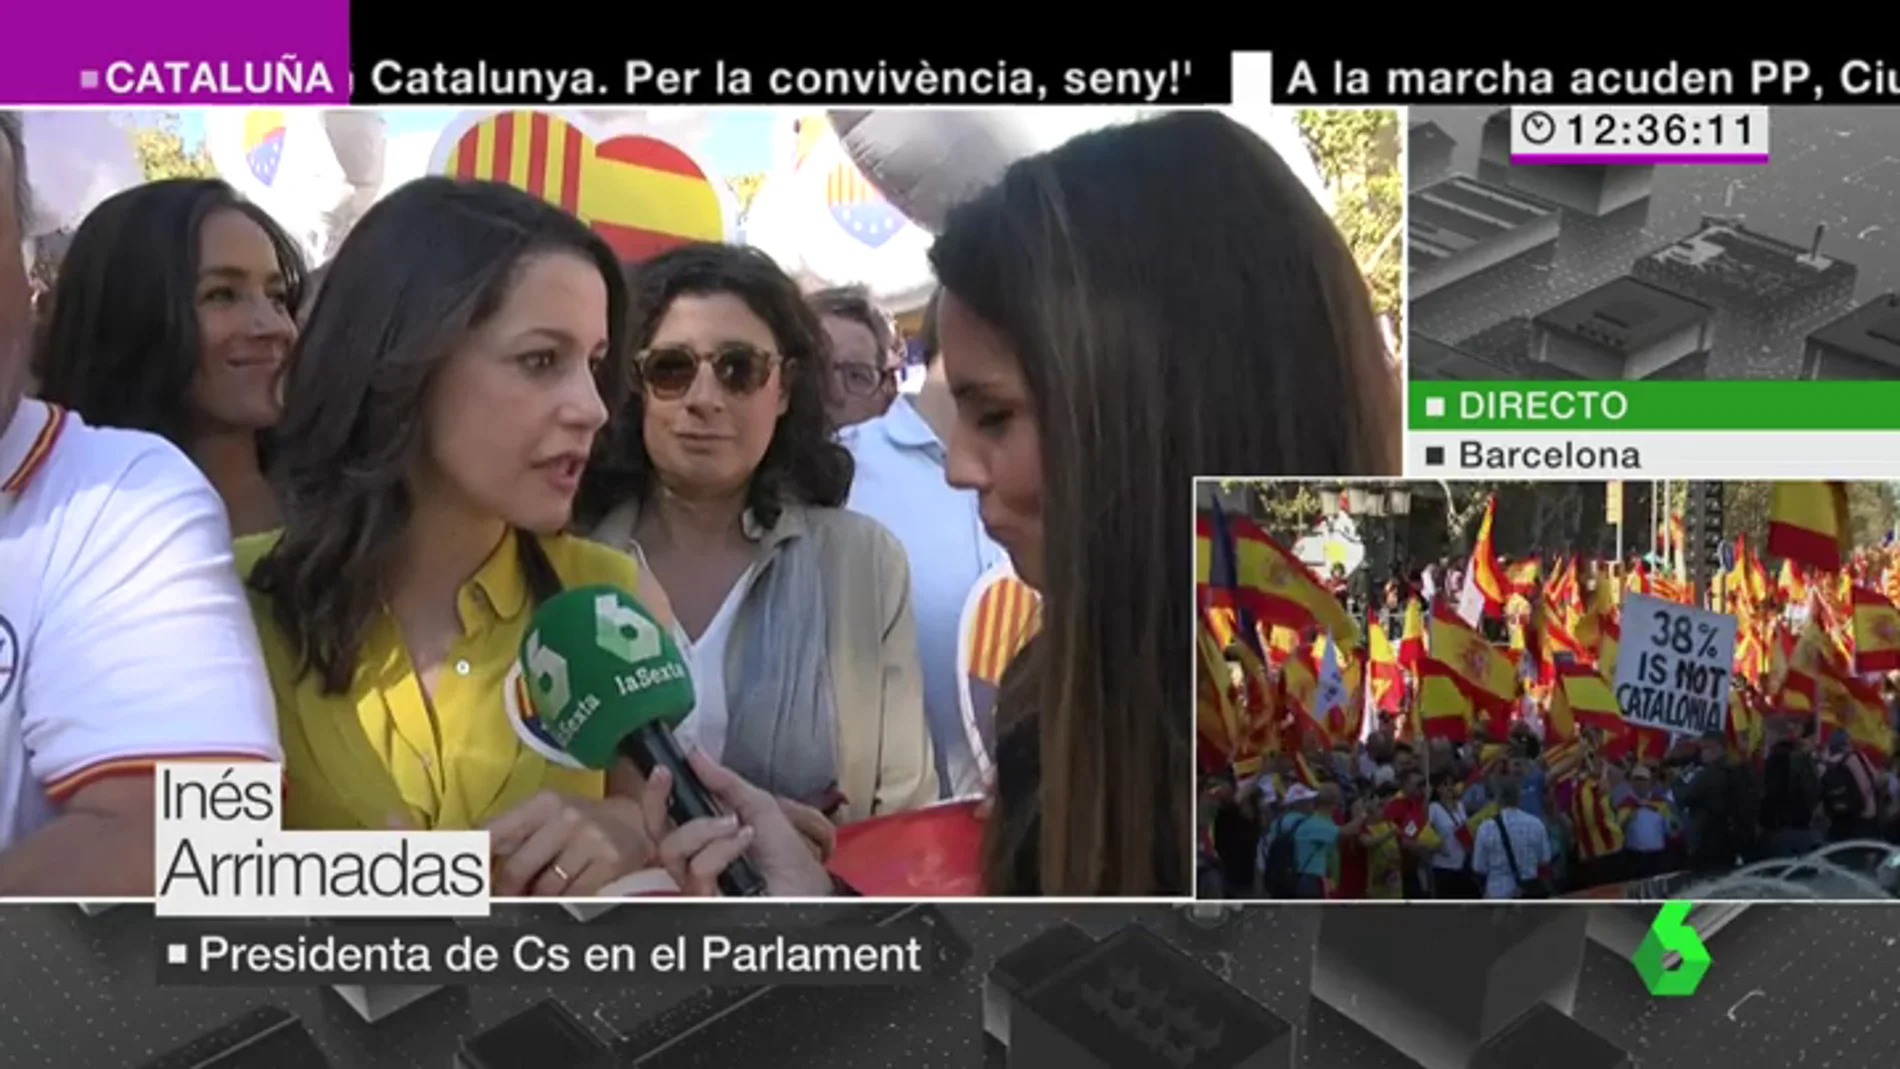 Inés Arrimadas: "Hay que salir a ganar las elecciones para recuperar la normalidad en nuestras instituciones"